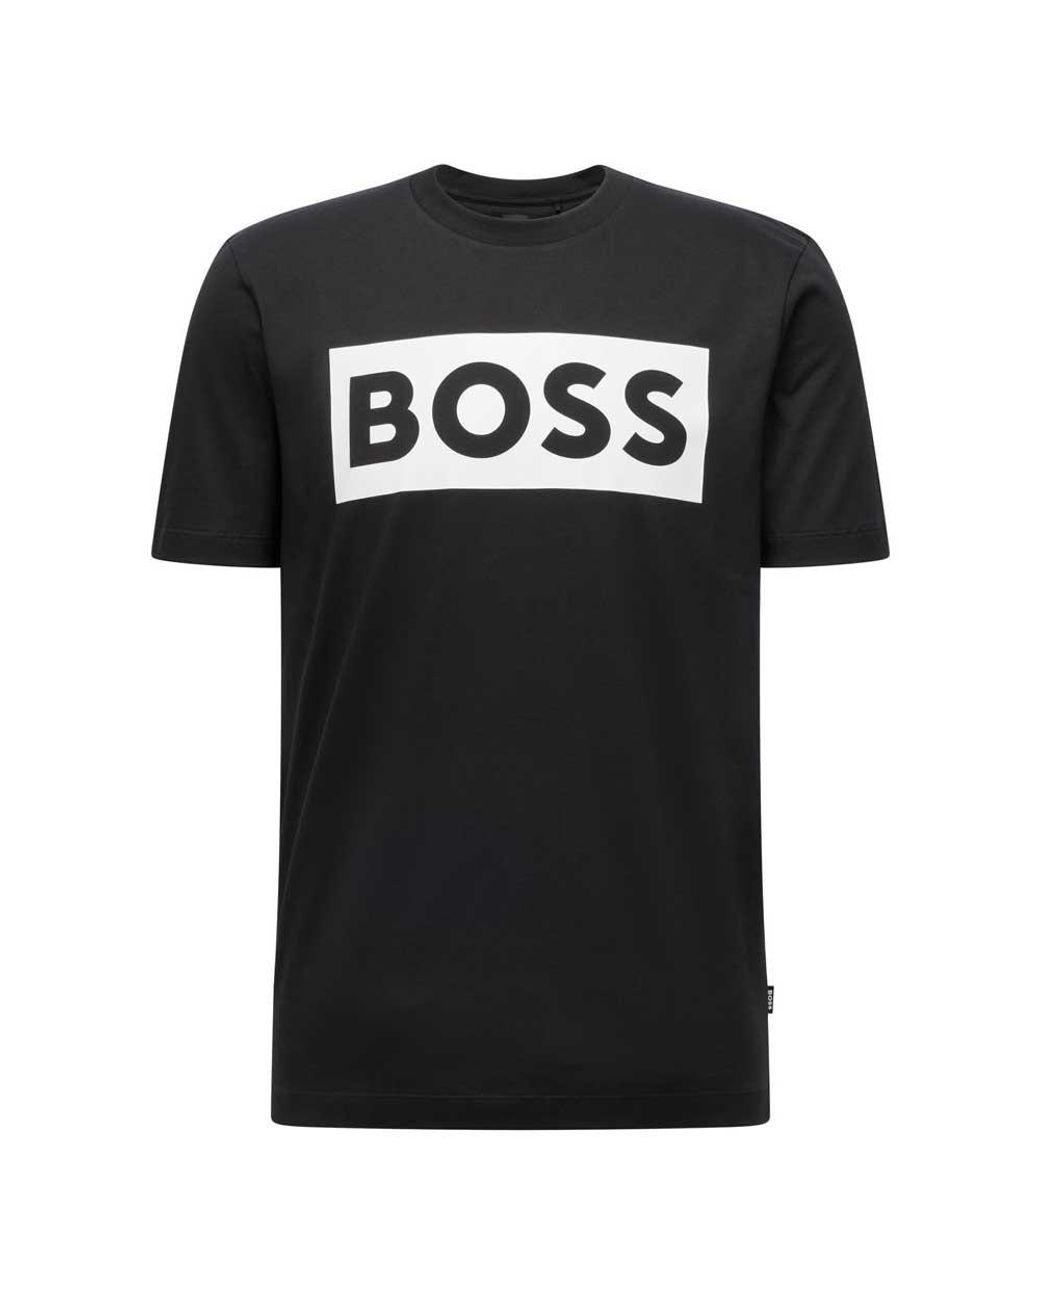 BOSS by HUGO BOSS Cotton Tiburt 292 Short Sleeve Crew Neck T-shirt in Black  for Men | Lyst